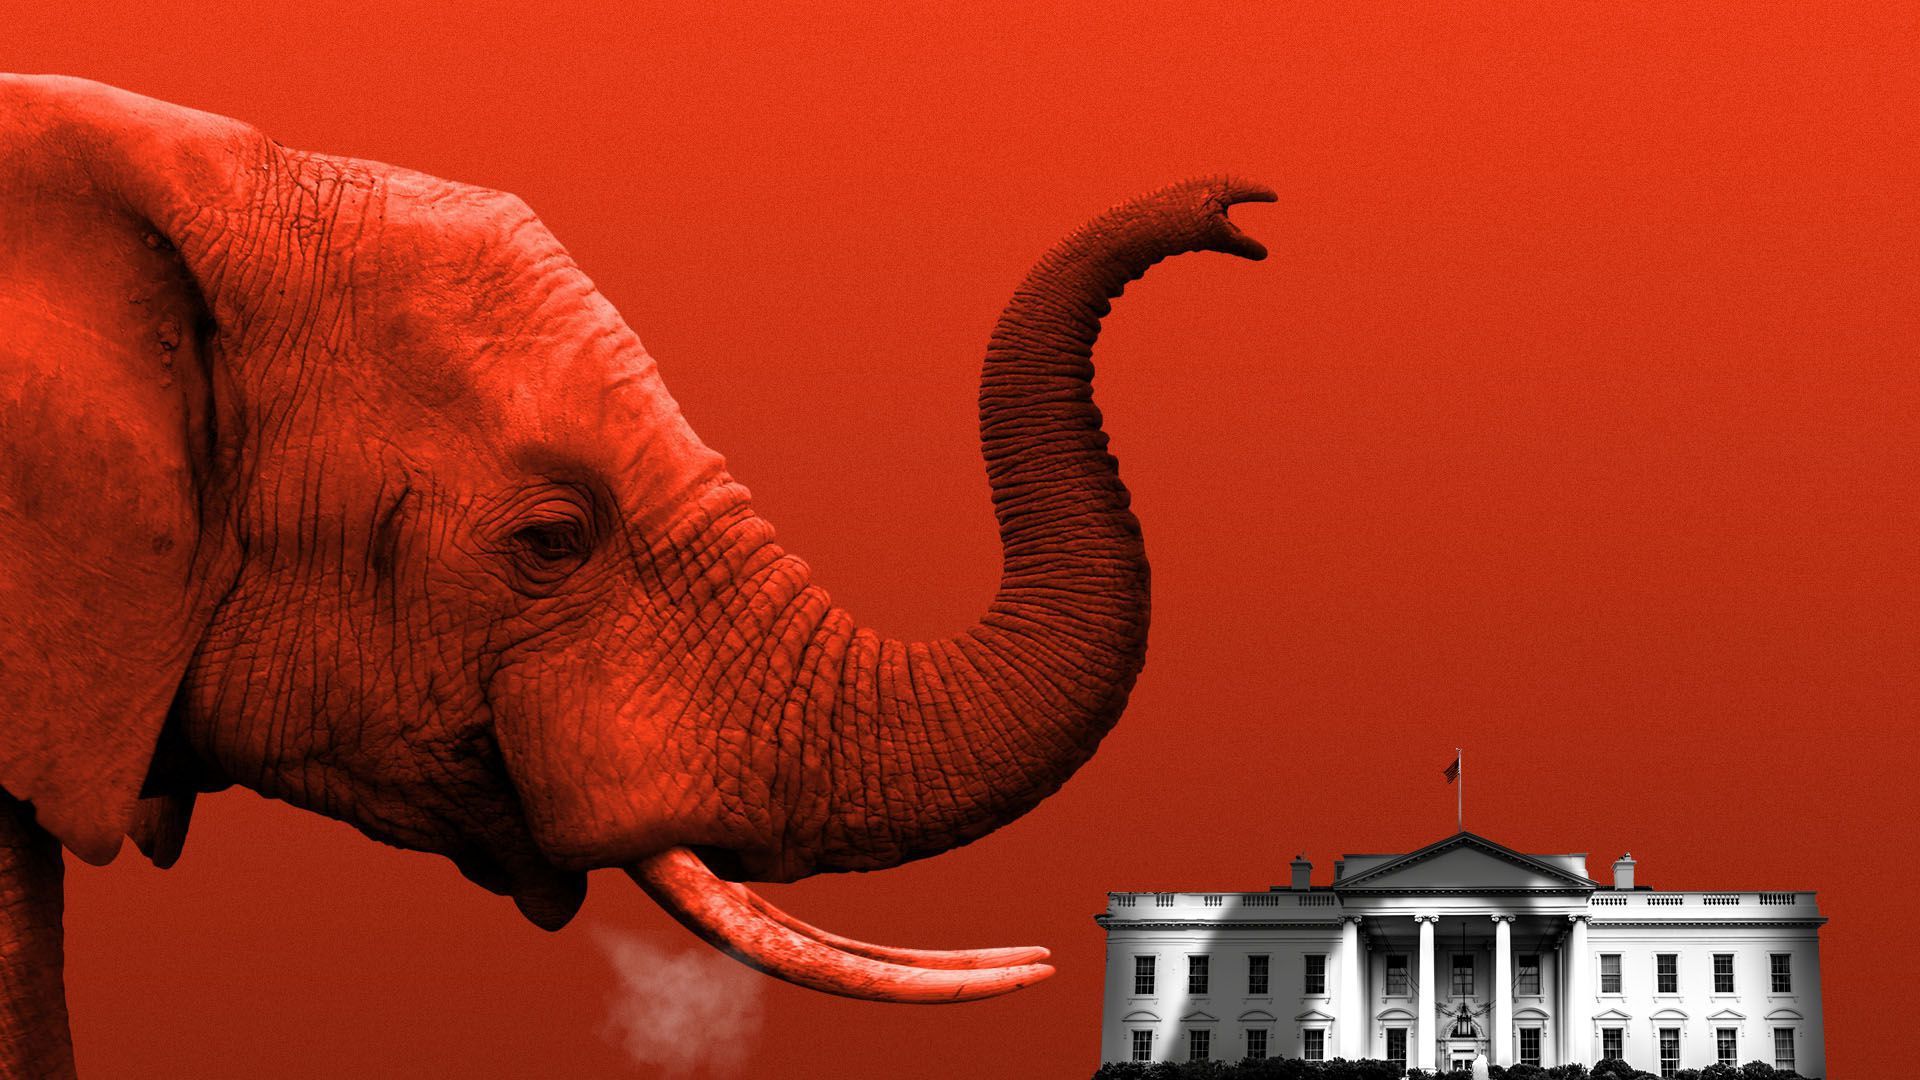 Elephant illustration over white house